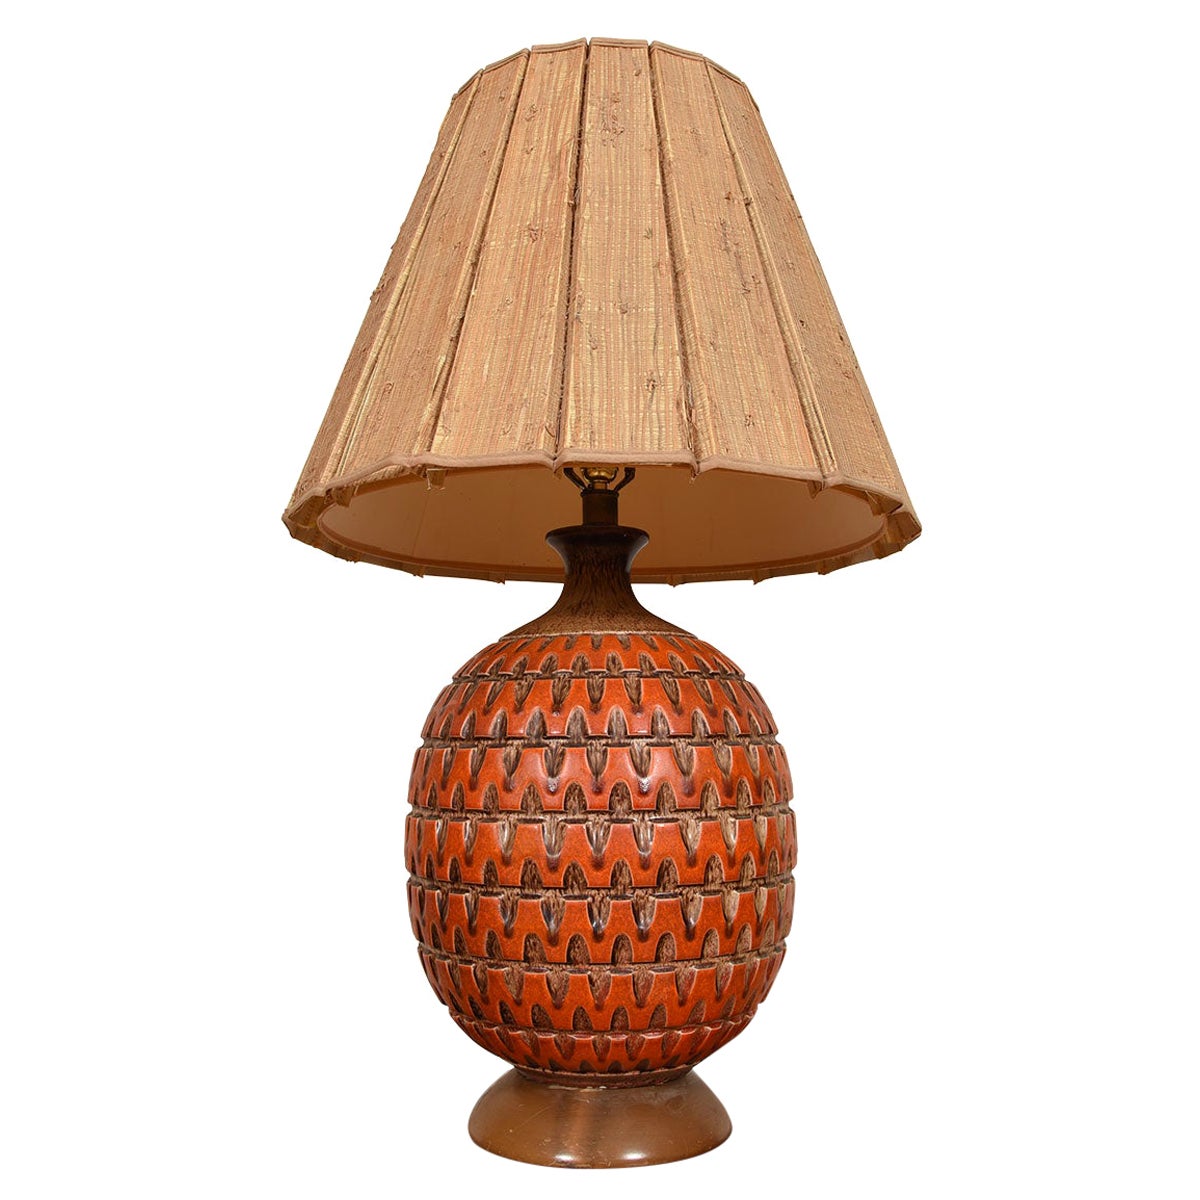 Lampe décorative surdimensionnée en orange brûlé avec une grande texture et une grande présence